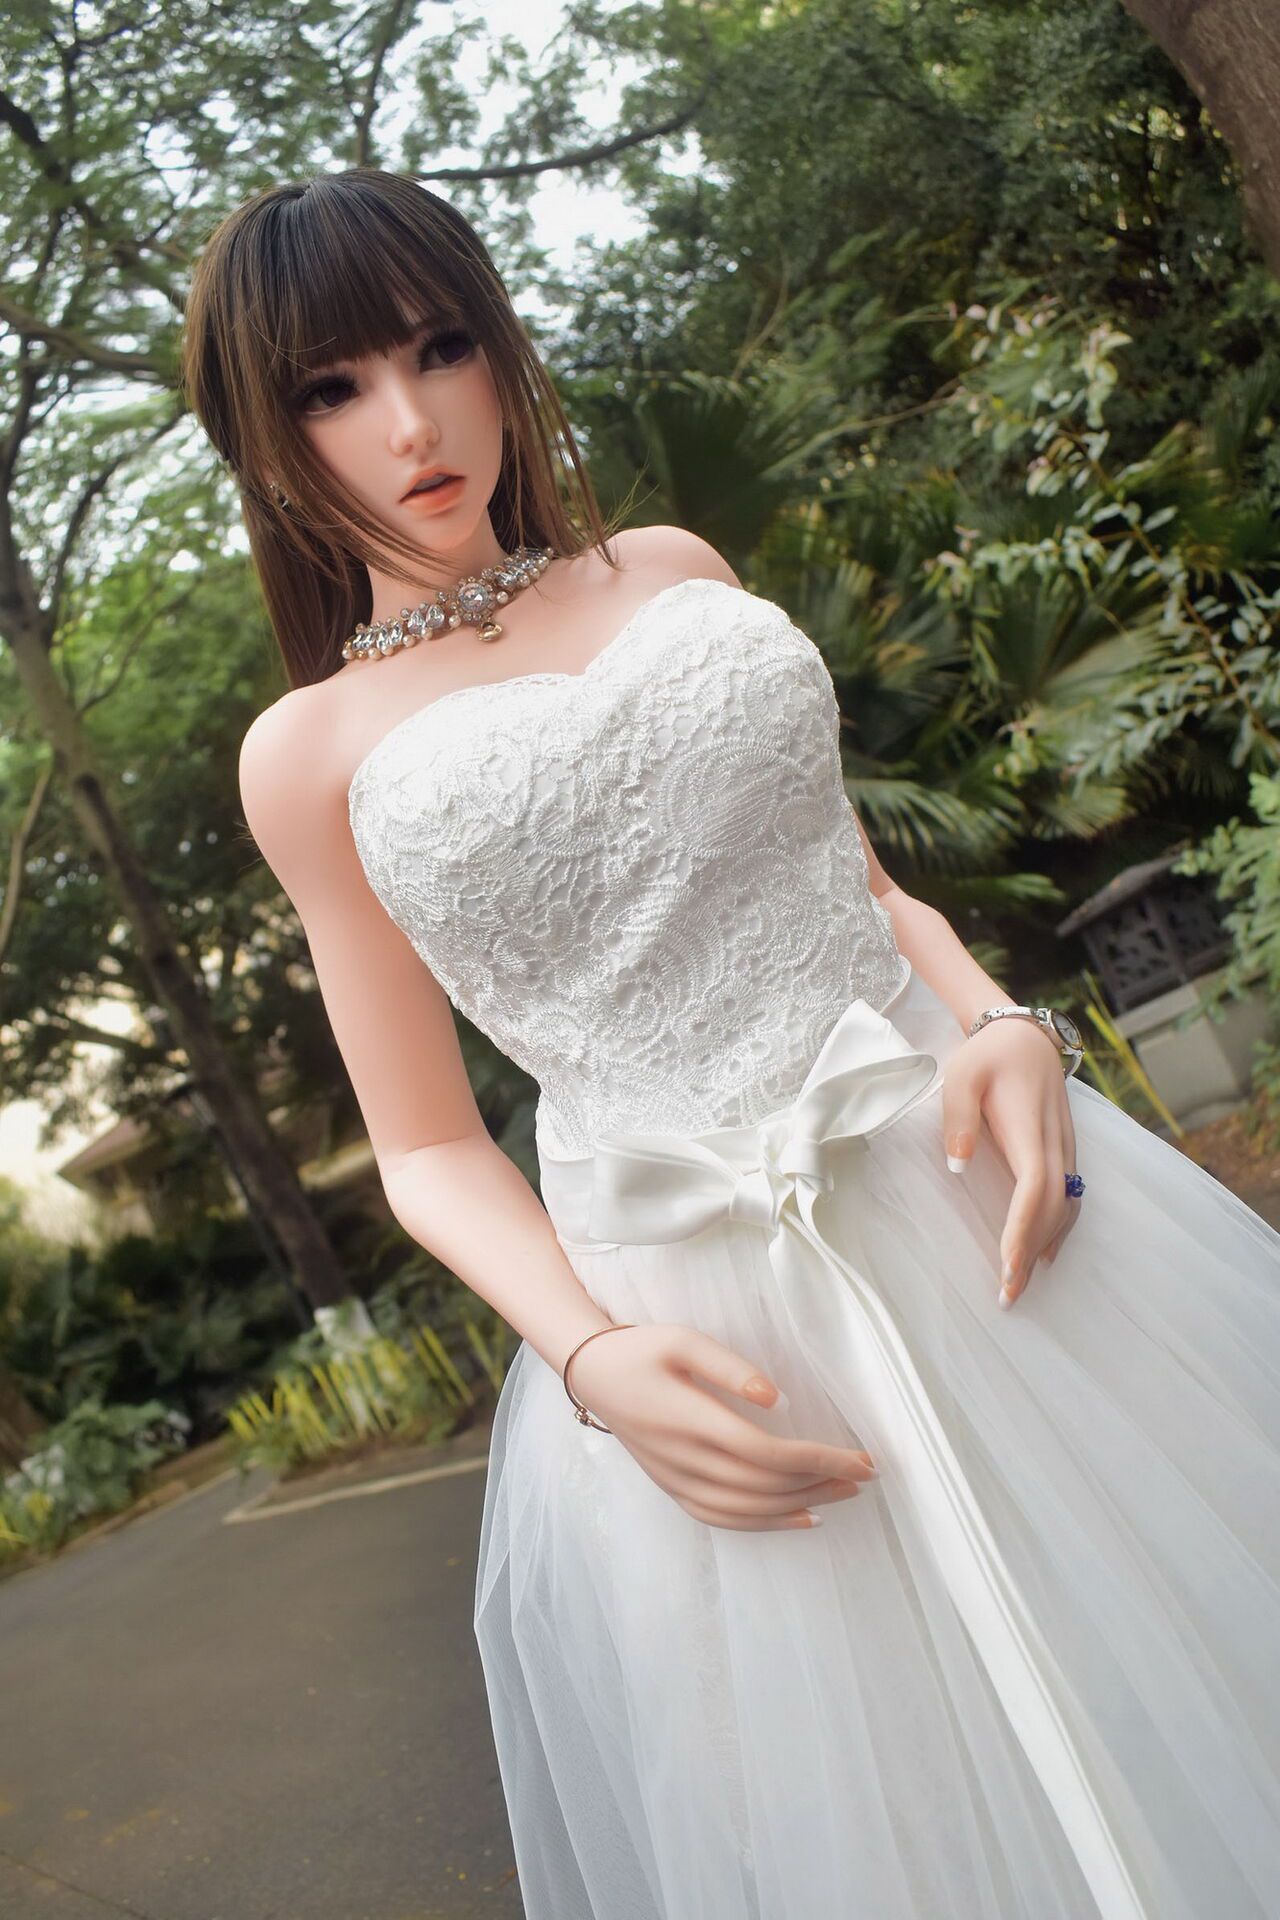 150CM HB031 Kurai Sakura-Bride in bud, to be married! by QIN 1